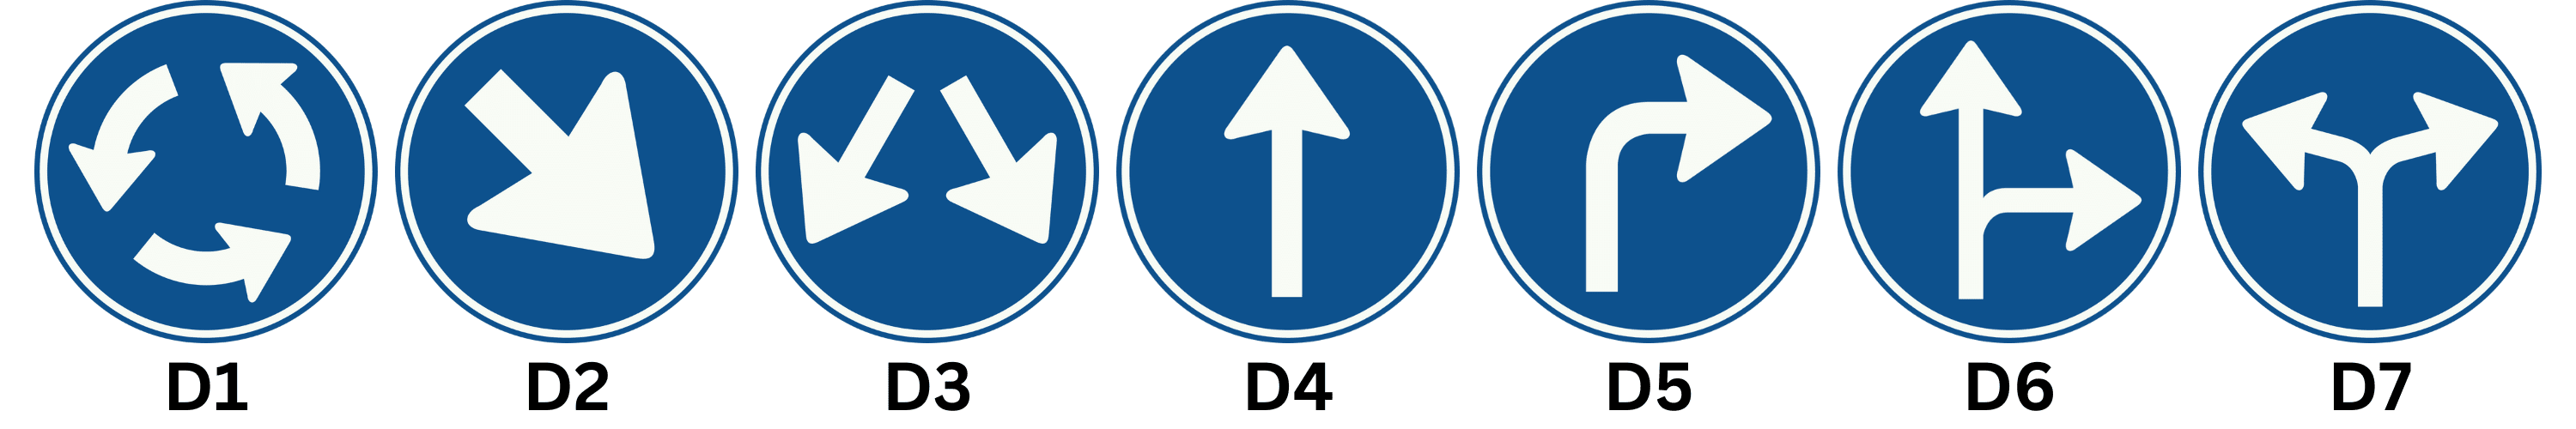 Verkeersborden D1, D2, D3, D4, D5, D6 en D7